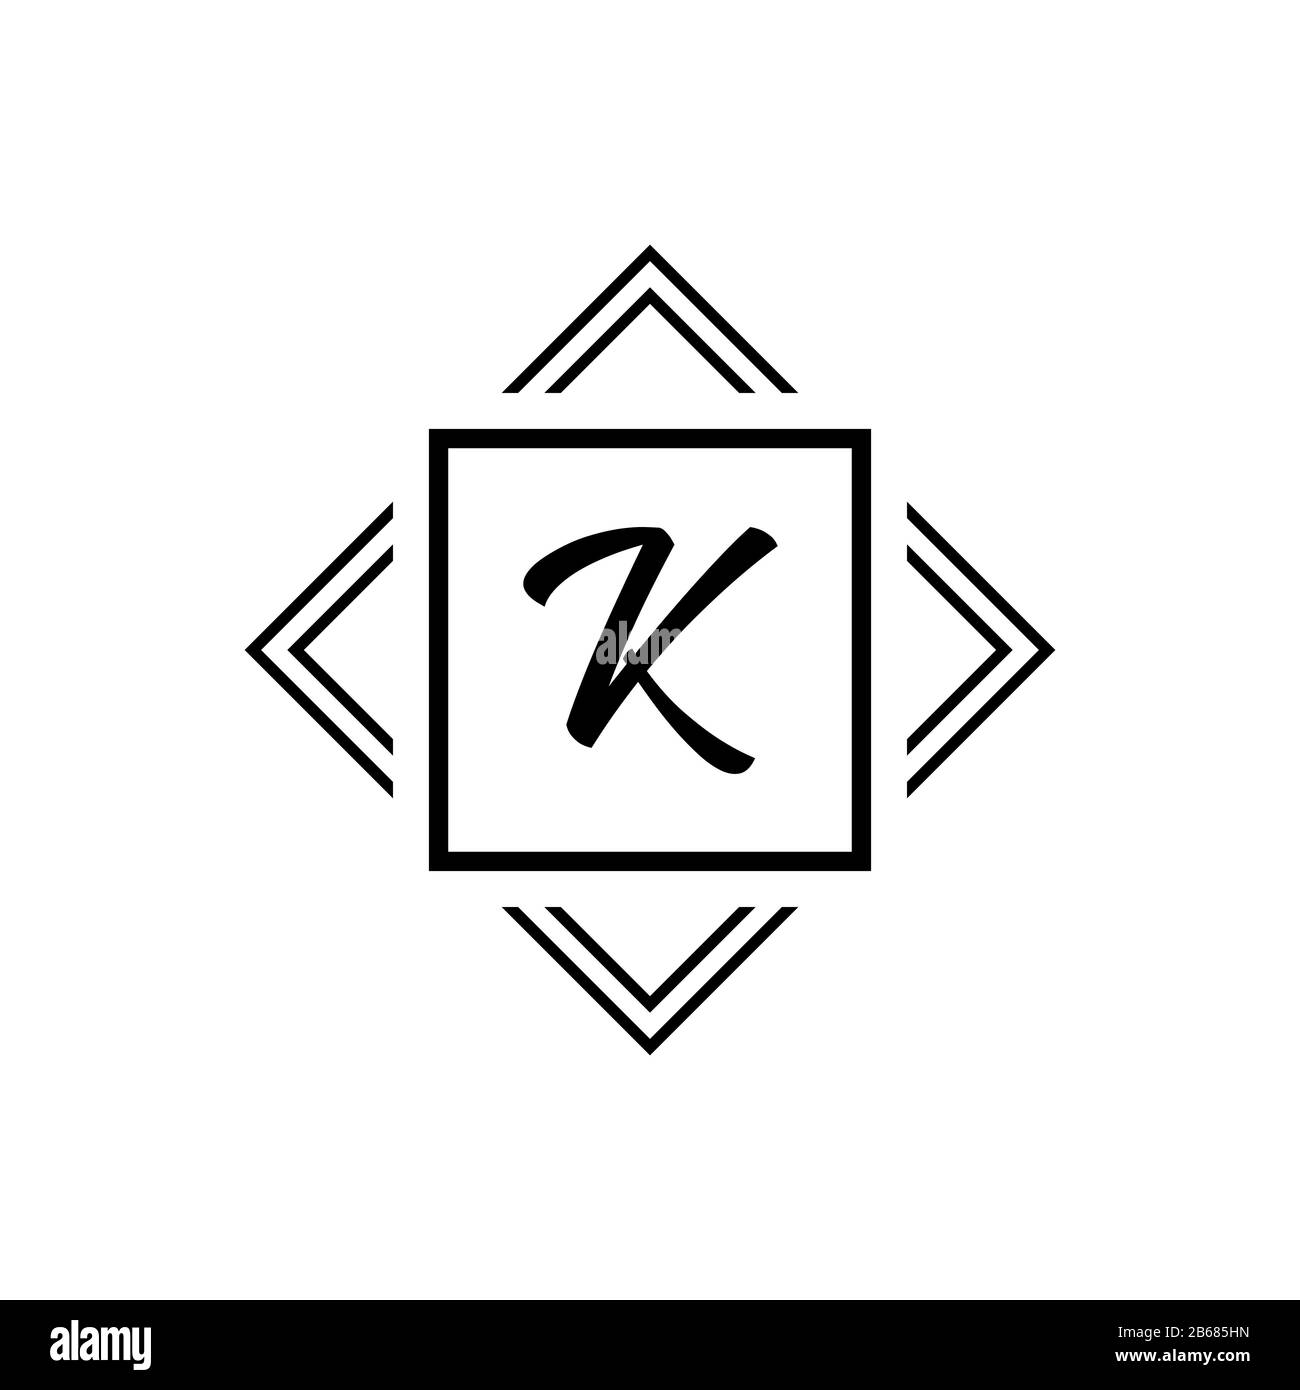 K monogram logo. Vector white geometric modern symbol on a black background. Letter in square Stock Vector